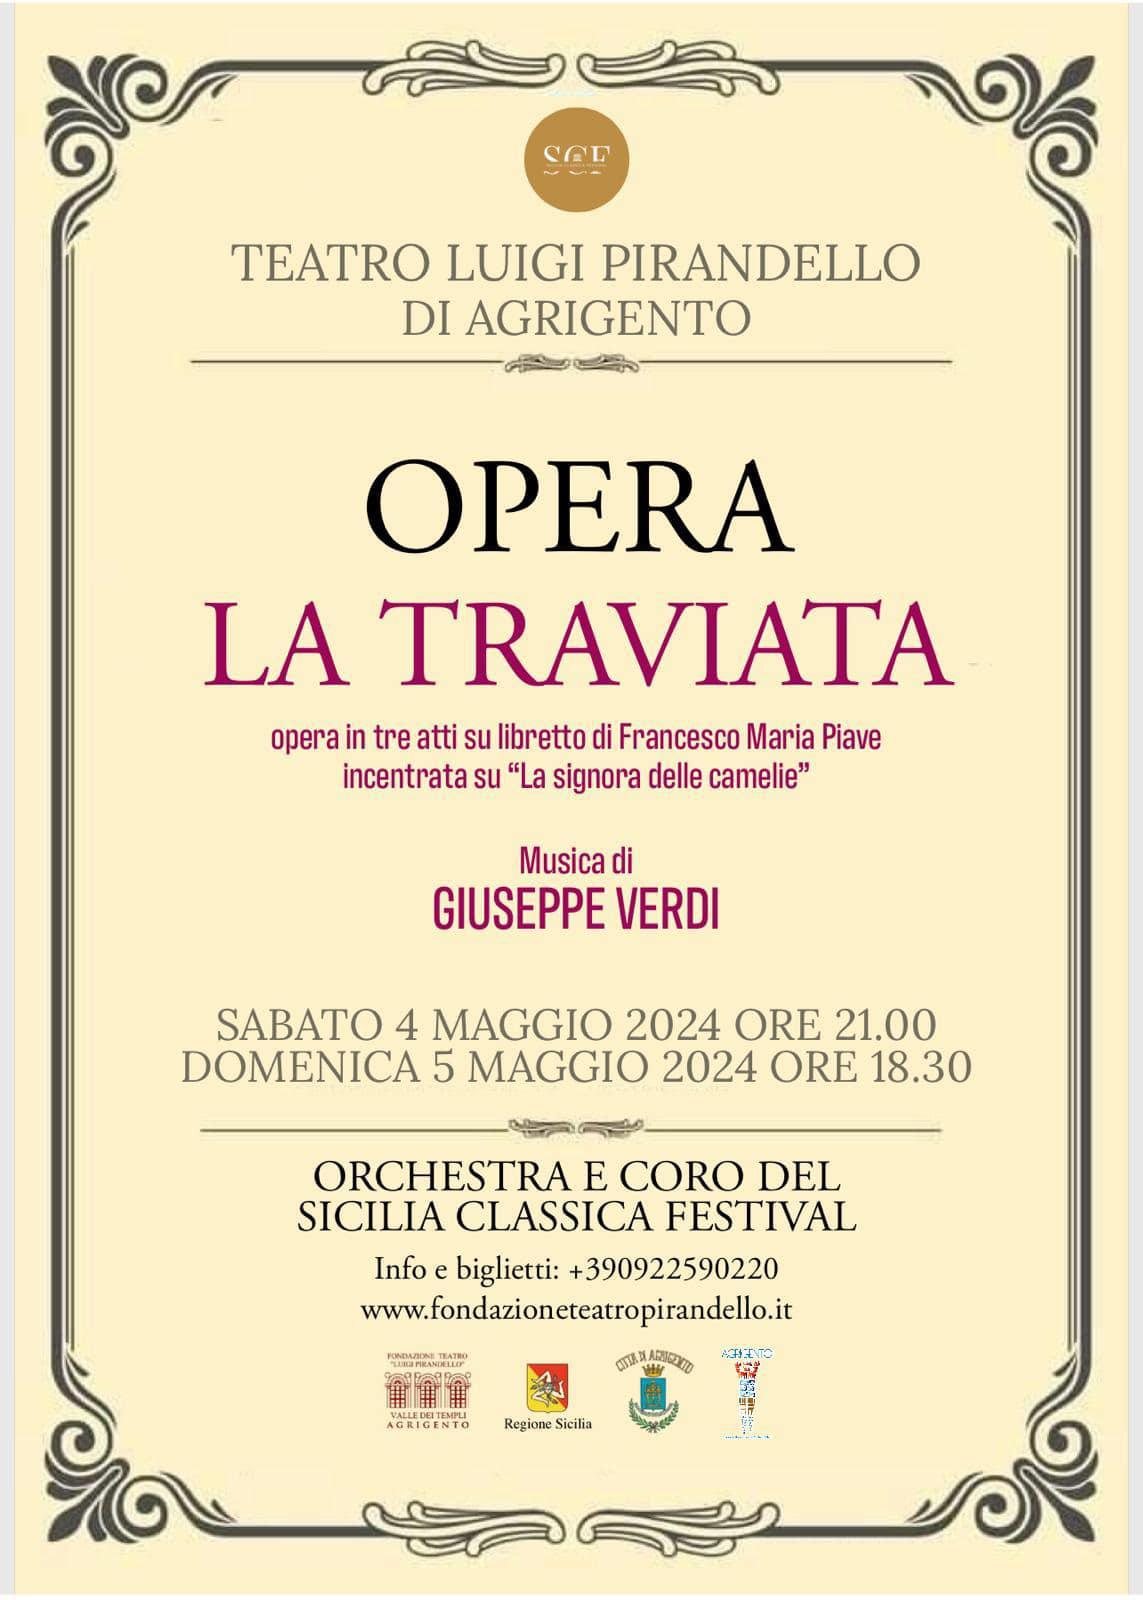 Opera la Traviata - Musica di Giuseppe Verdi (inizio ore 21:00)